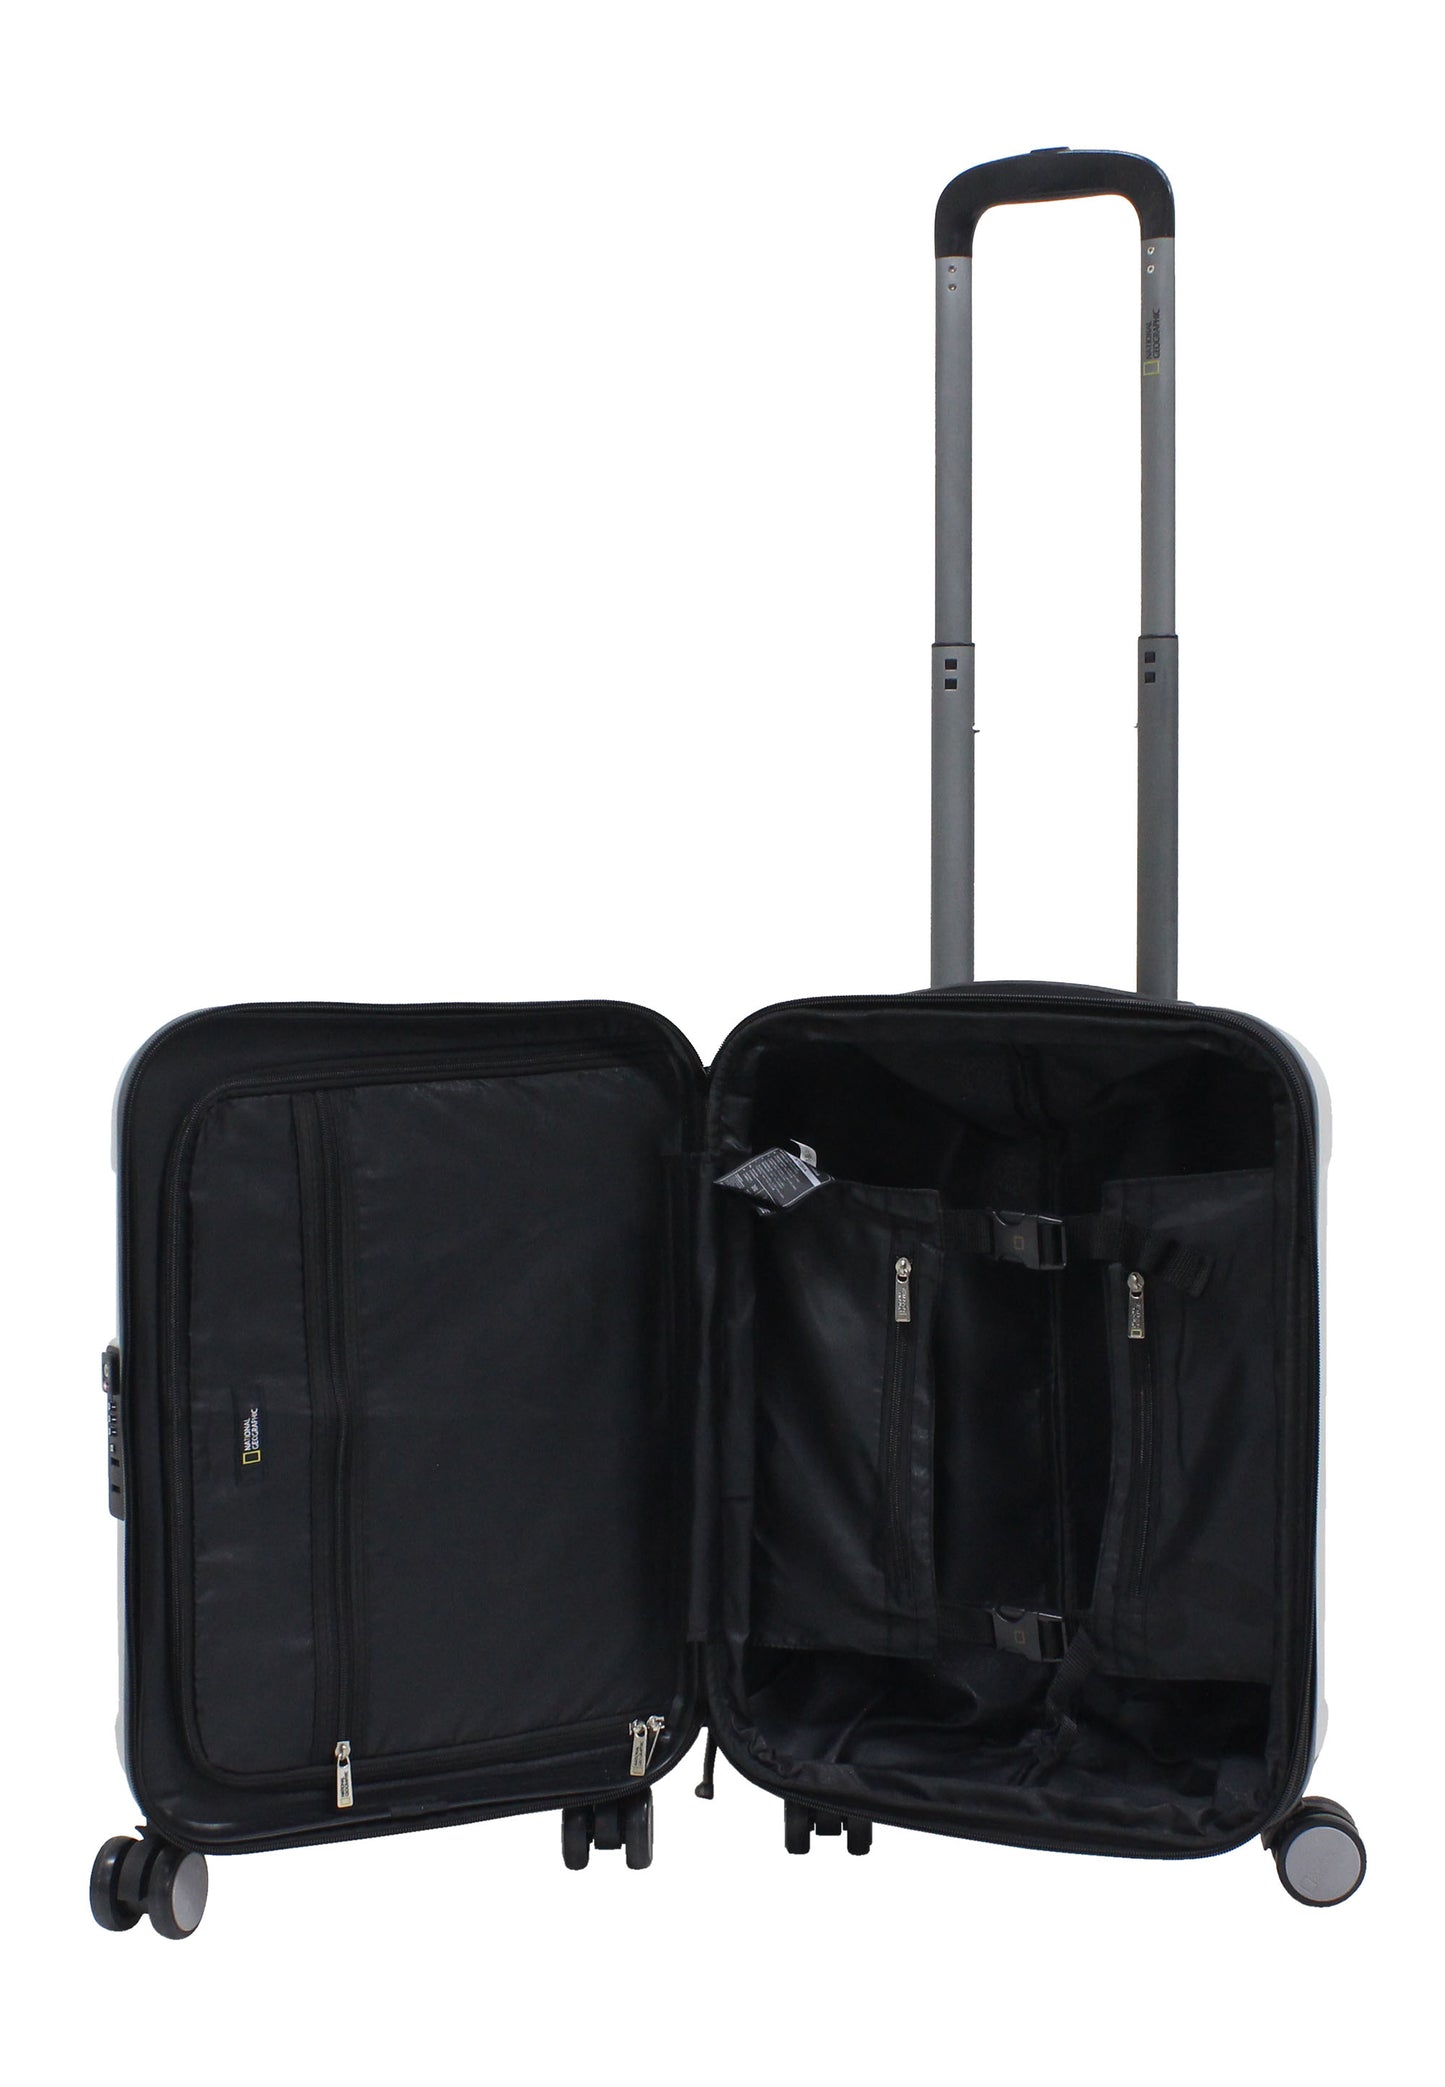 Valise rigide pour bagage à main National Geographic / Trolley / Valise de voyage - 55 cm (Petite) - Transit - Argent